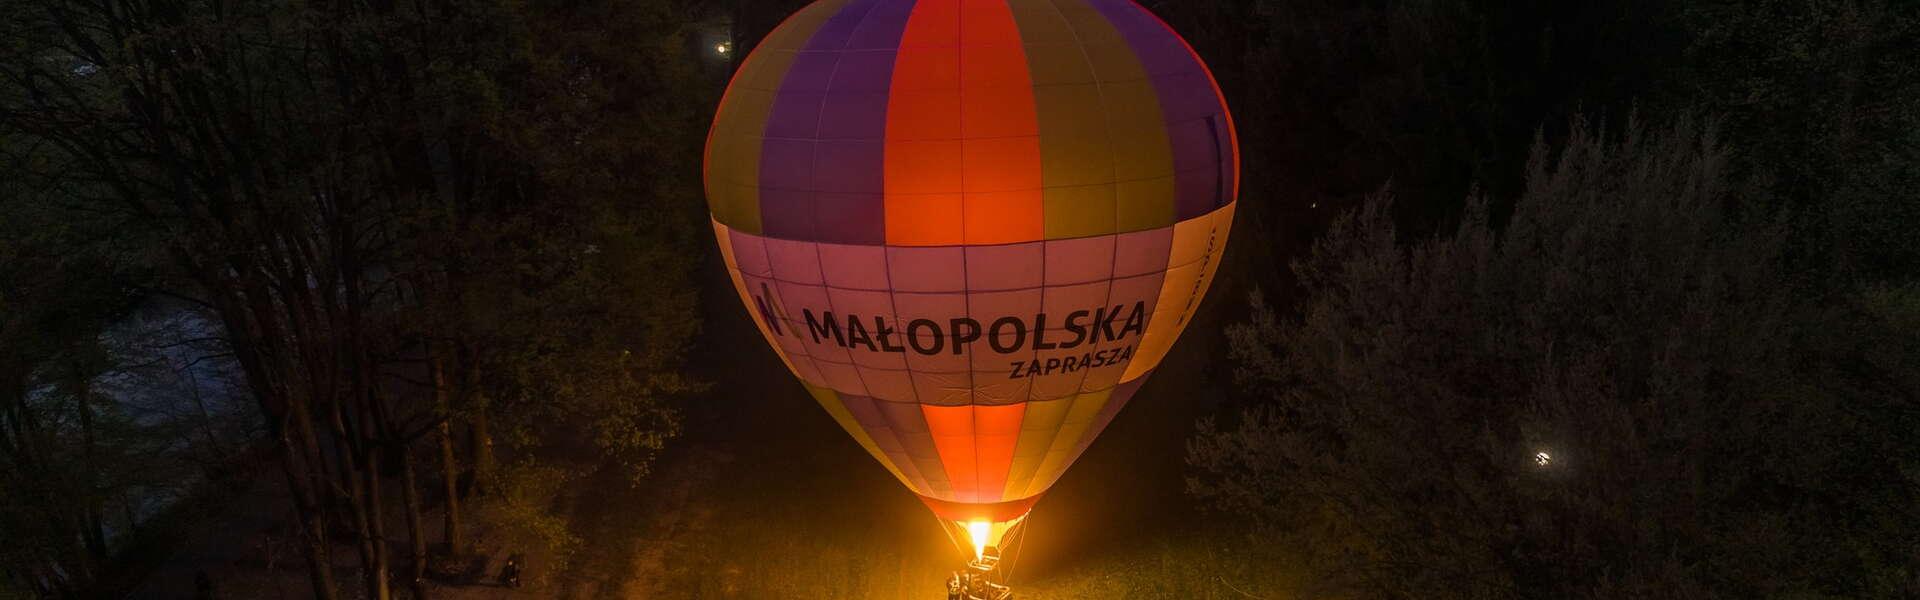 Balon na ogrzane powietrze z logo Małopolska w porze wieczornej w parku, podświetlony od dołu zapalonym palnikiem